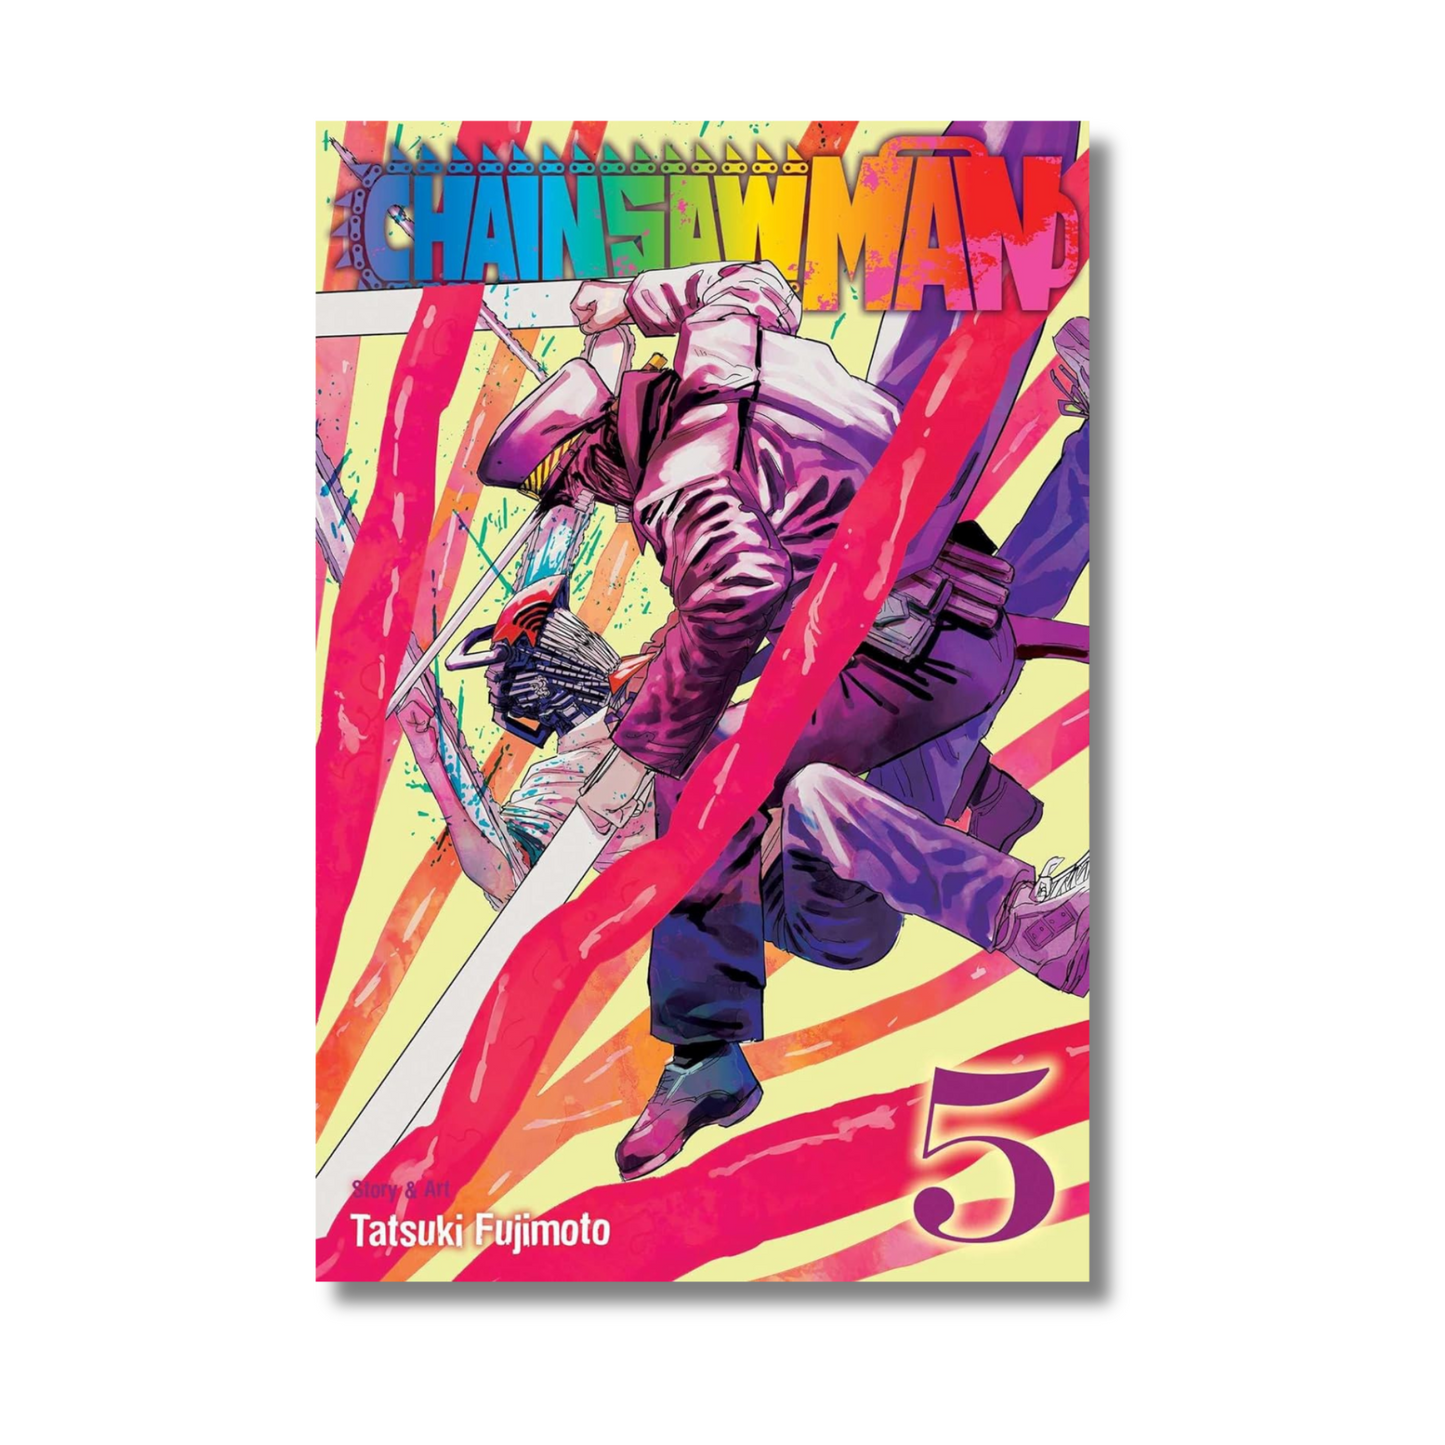 Chainsaw Man Vol. 5 by Tatsuki Fujimoto (Paperback)